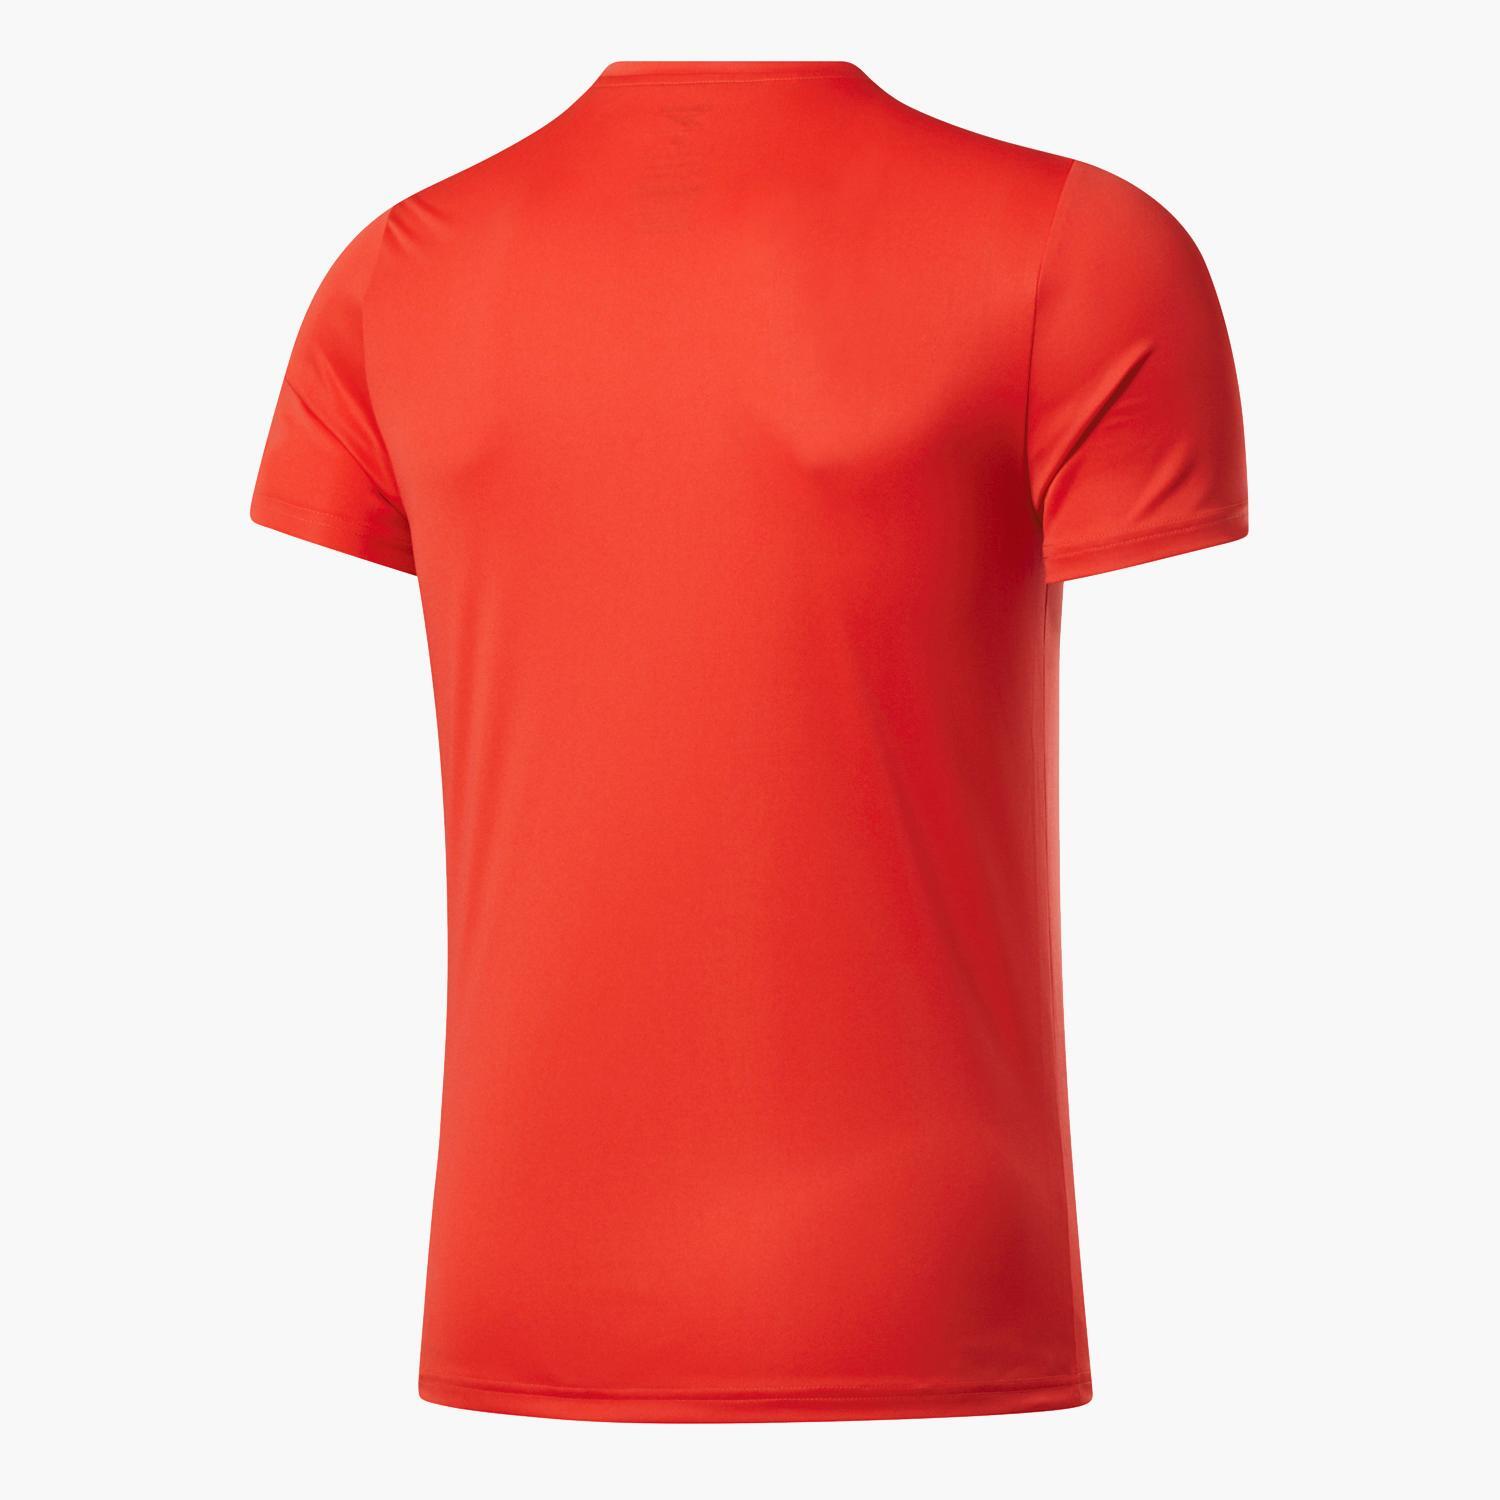 T-shirt Laranja - T-shirt Running Homem tamanho M